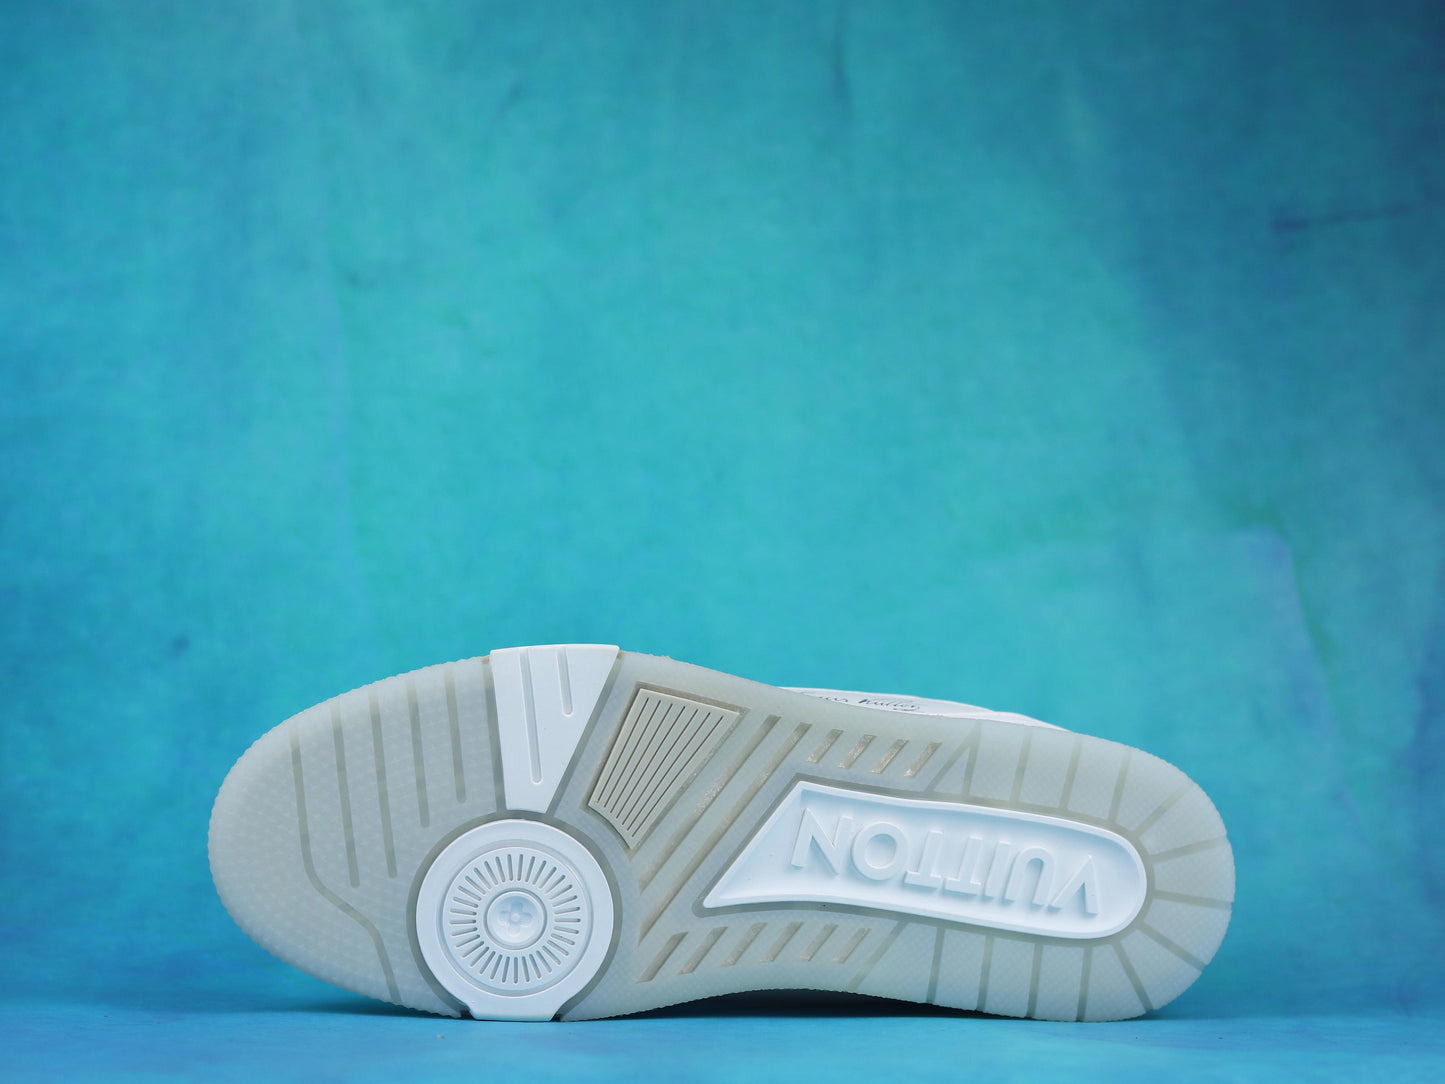 LV Trainer Sneaker White/Gum/signature